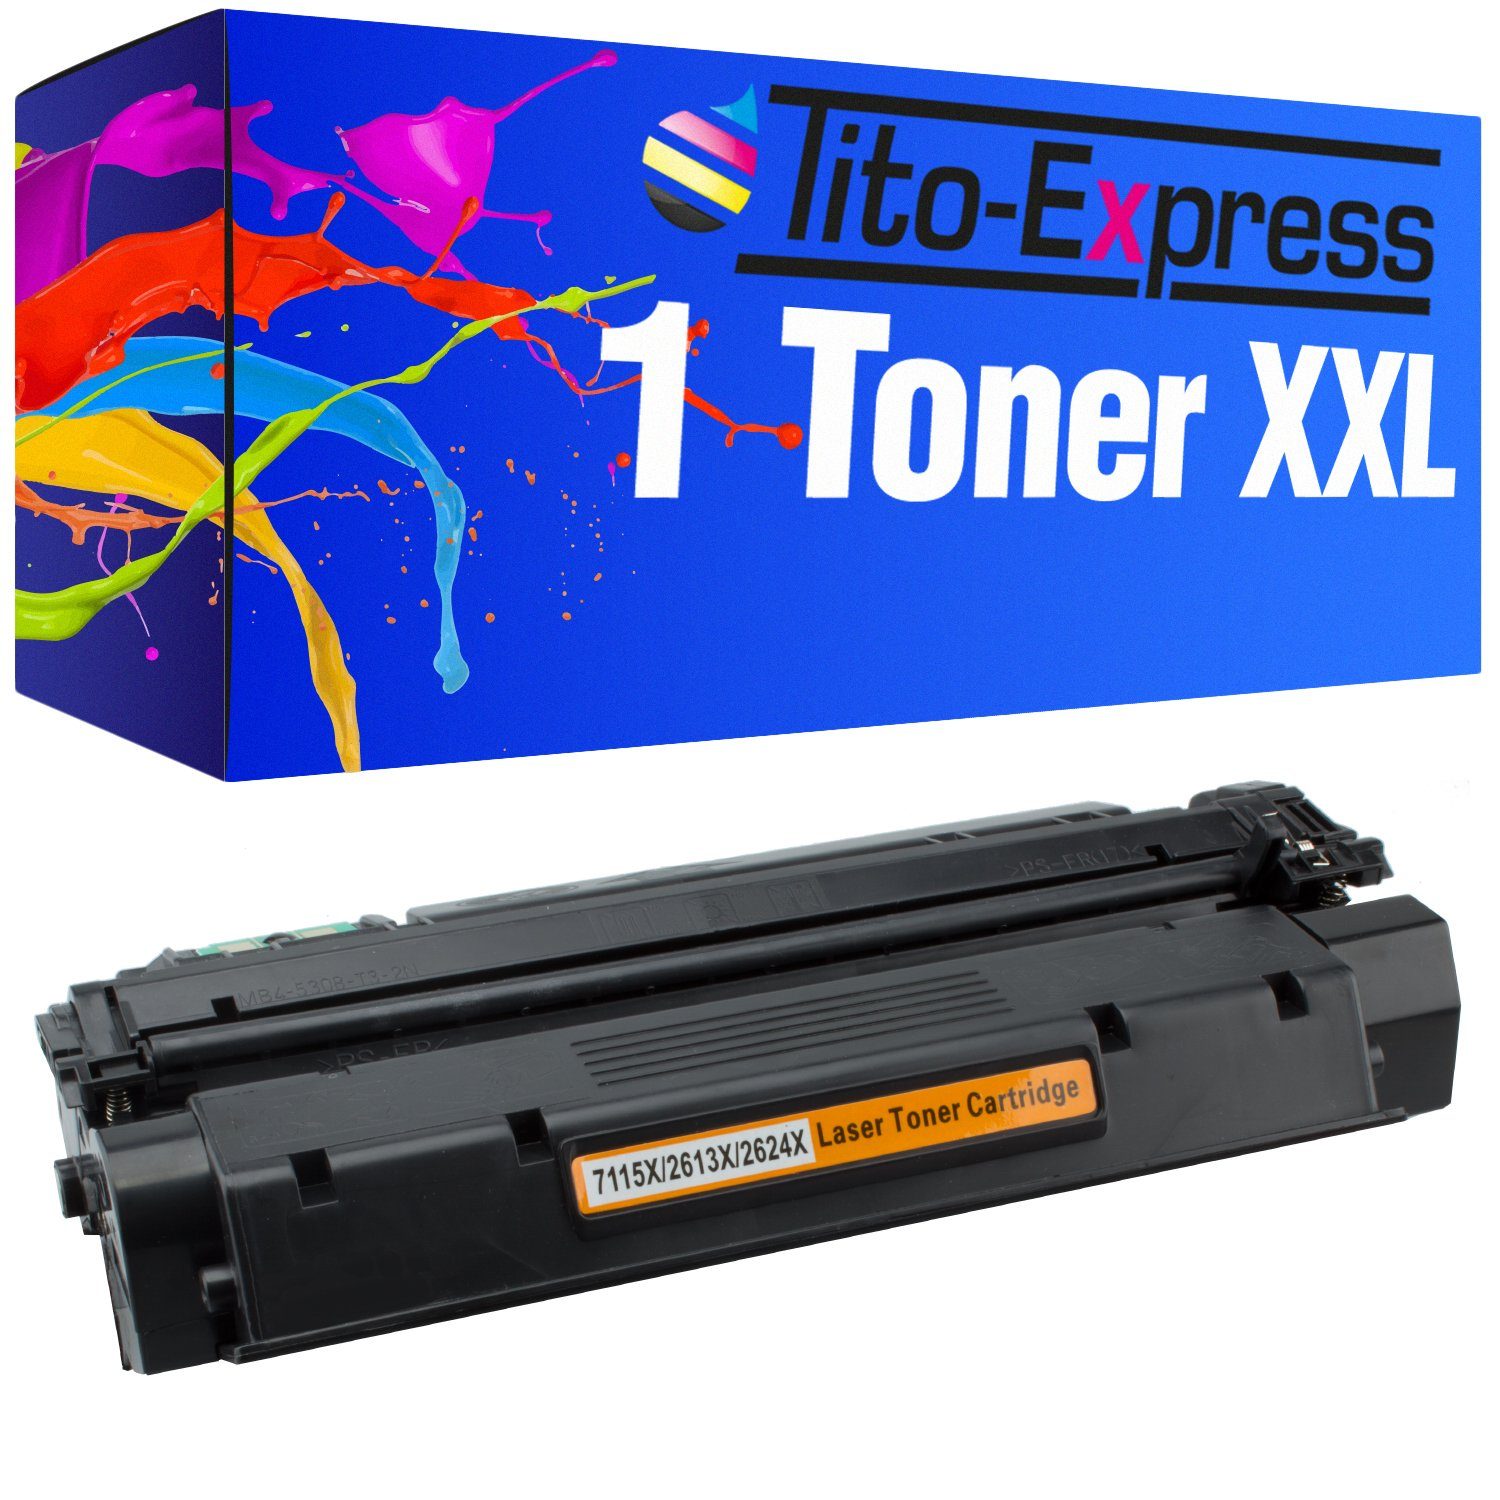 Tito-Express Tonerpatrone ersetzt HP Q 2613 X HP Q 2613X HPQ2613X HP 13X Black, für Laserjet LJ 1300 1300N 1300XI 1300T